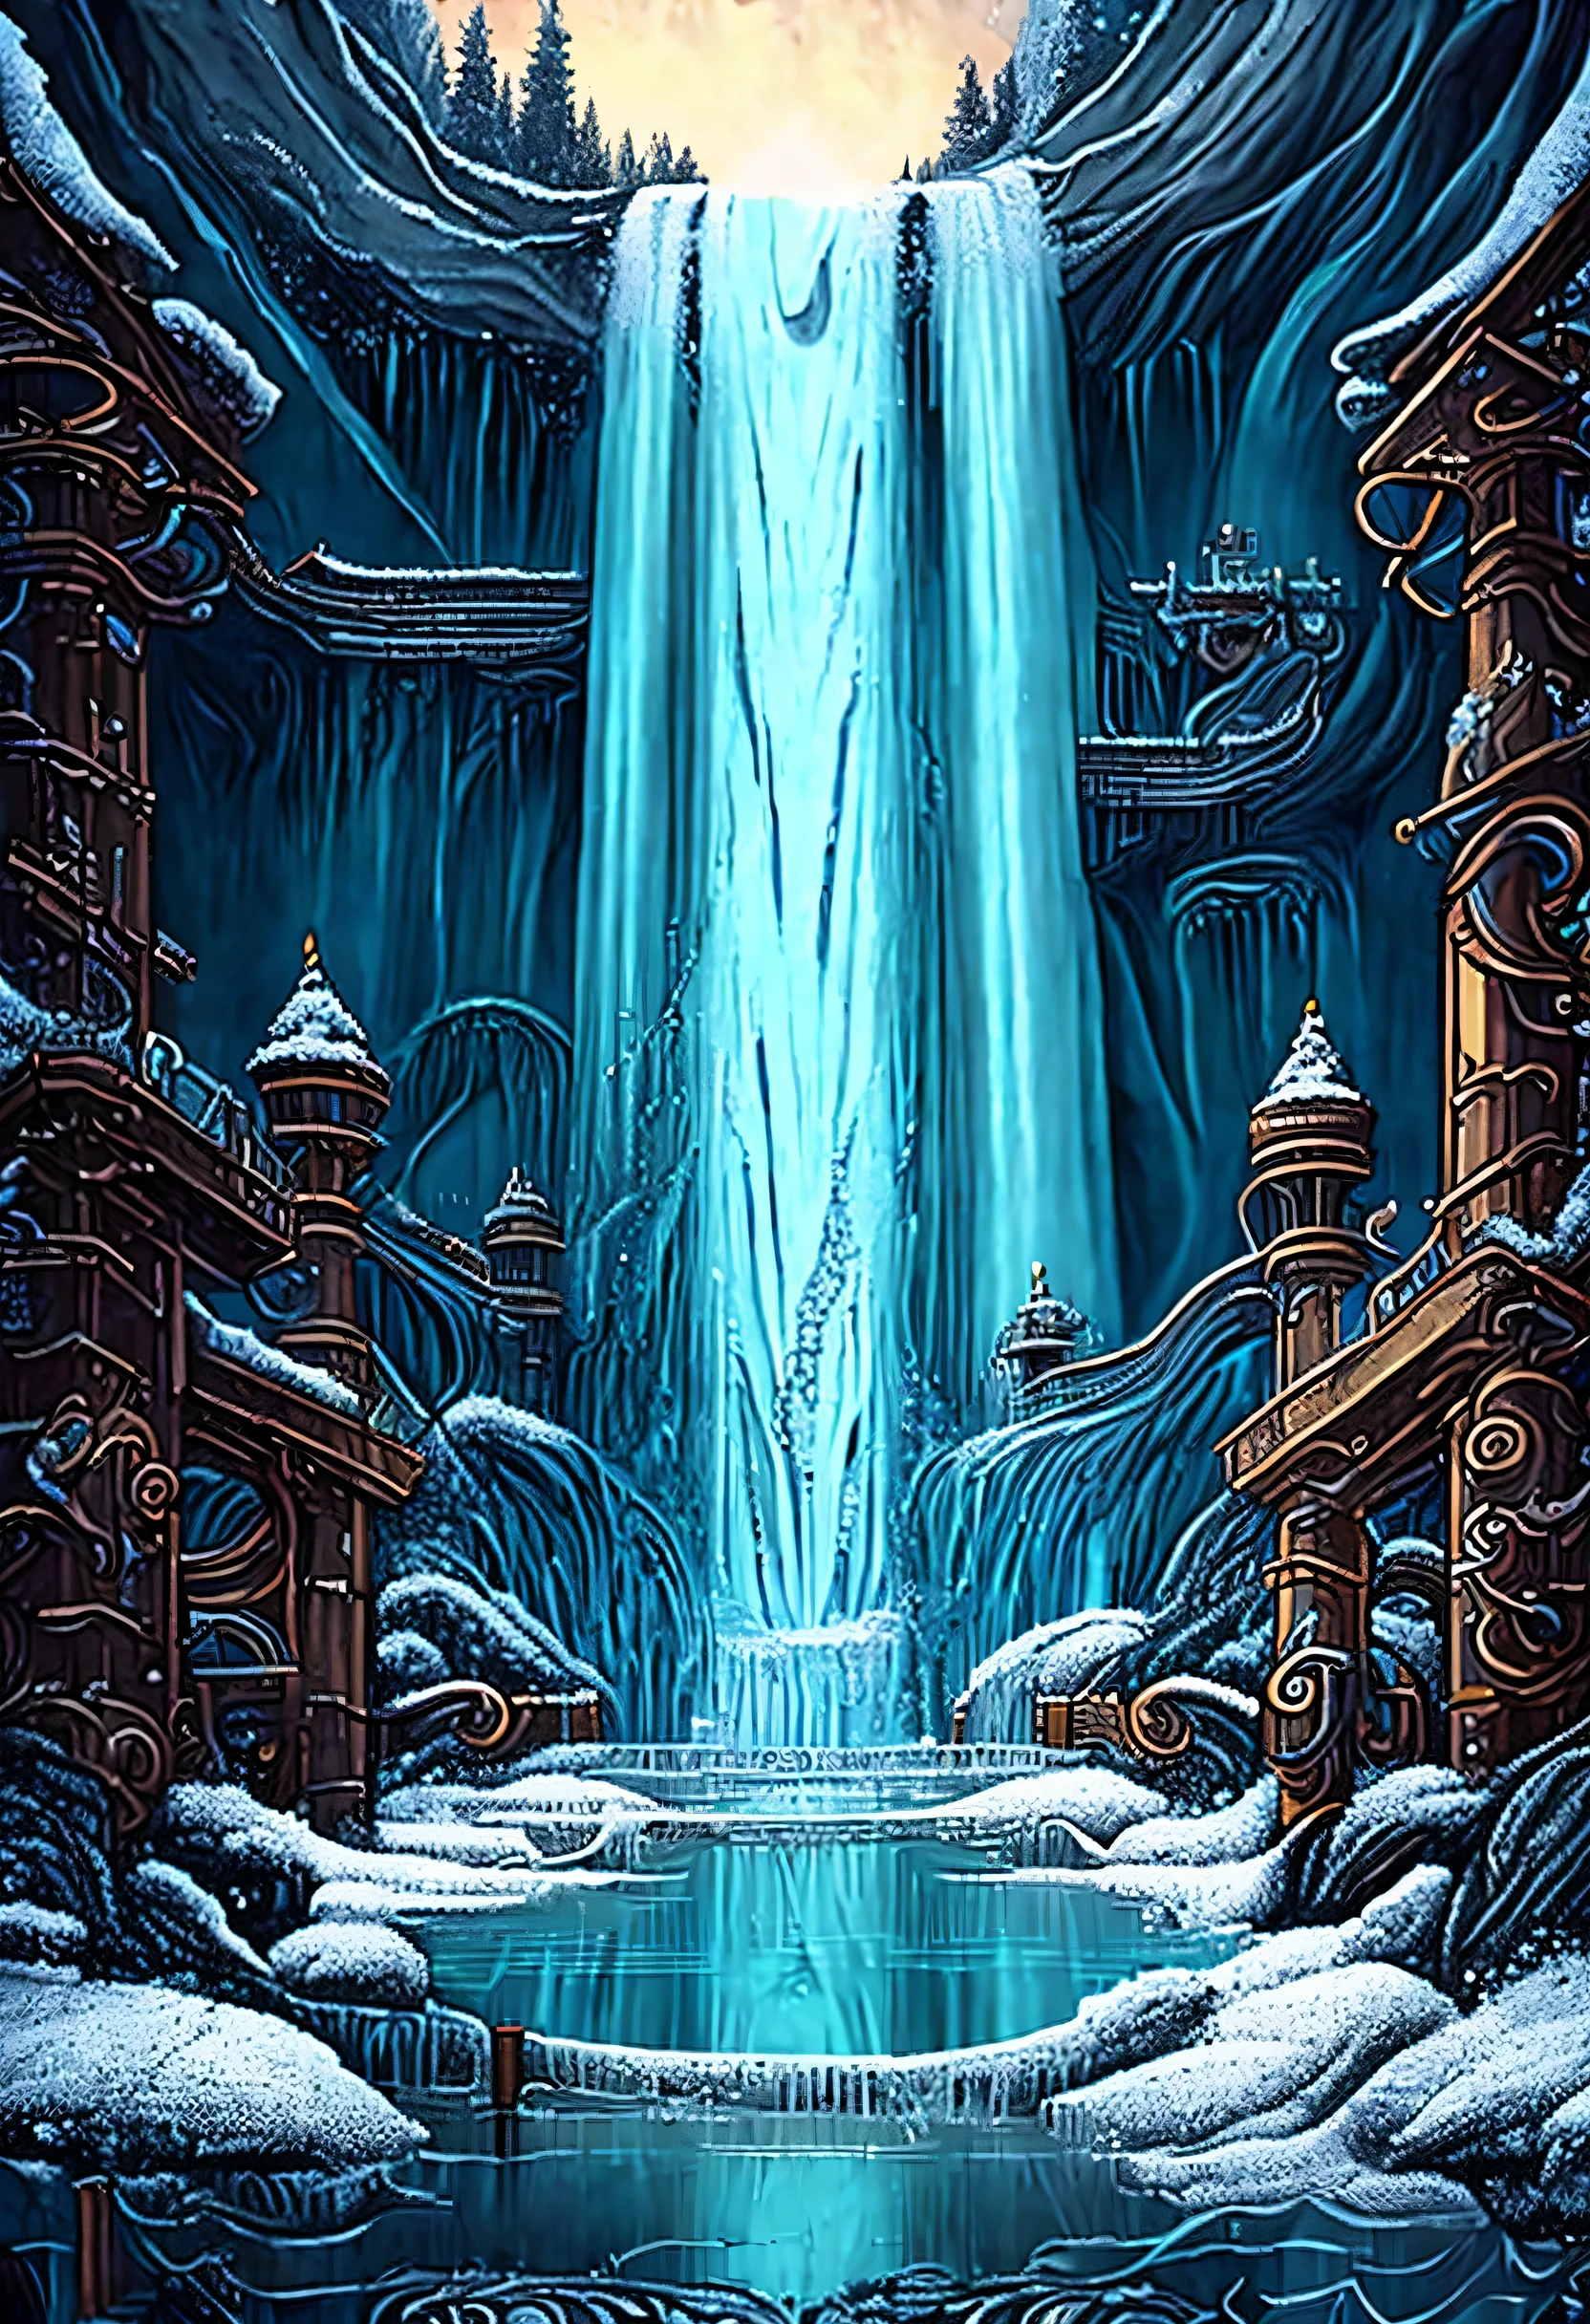 Мир, вдохновленный стимпанком, (((Потрясающий водопад в стиле стимпанк:1.3))), Величественный водопад замерзает, Захватывающее представление льда и снега, (((иллюстрация тьмы и света:1.3))), удивительный зимний водопад, Большой мост с подсветкой, кристально чистый бассейн внизу, кирпичная лестница, ведущая к мосту, украшен светящимися фонариками, серый волк пьет воду, Зубчатые колеса и трубы, естественный блеск и тени, Машины в сверкающей воде и тумане, сложная техника, (((Сложные детальные чертежи:1.3))),